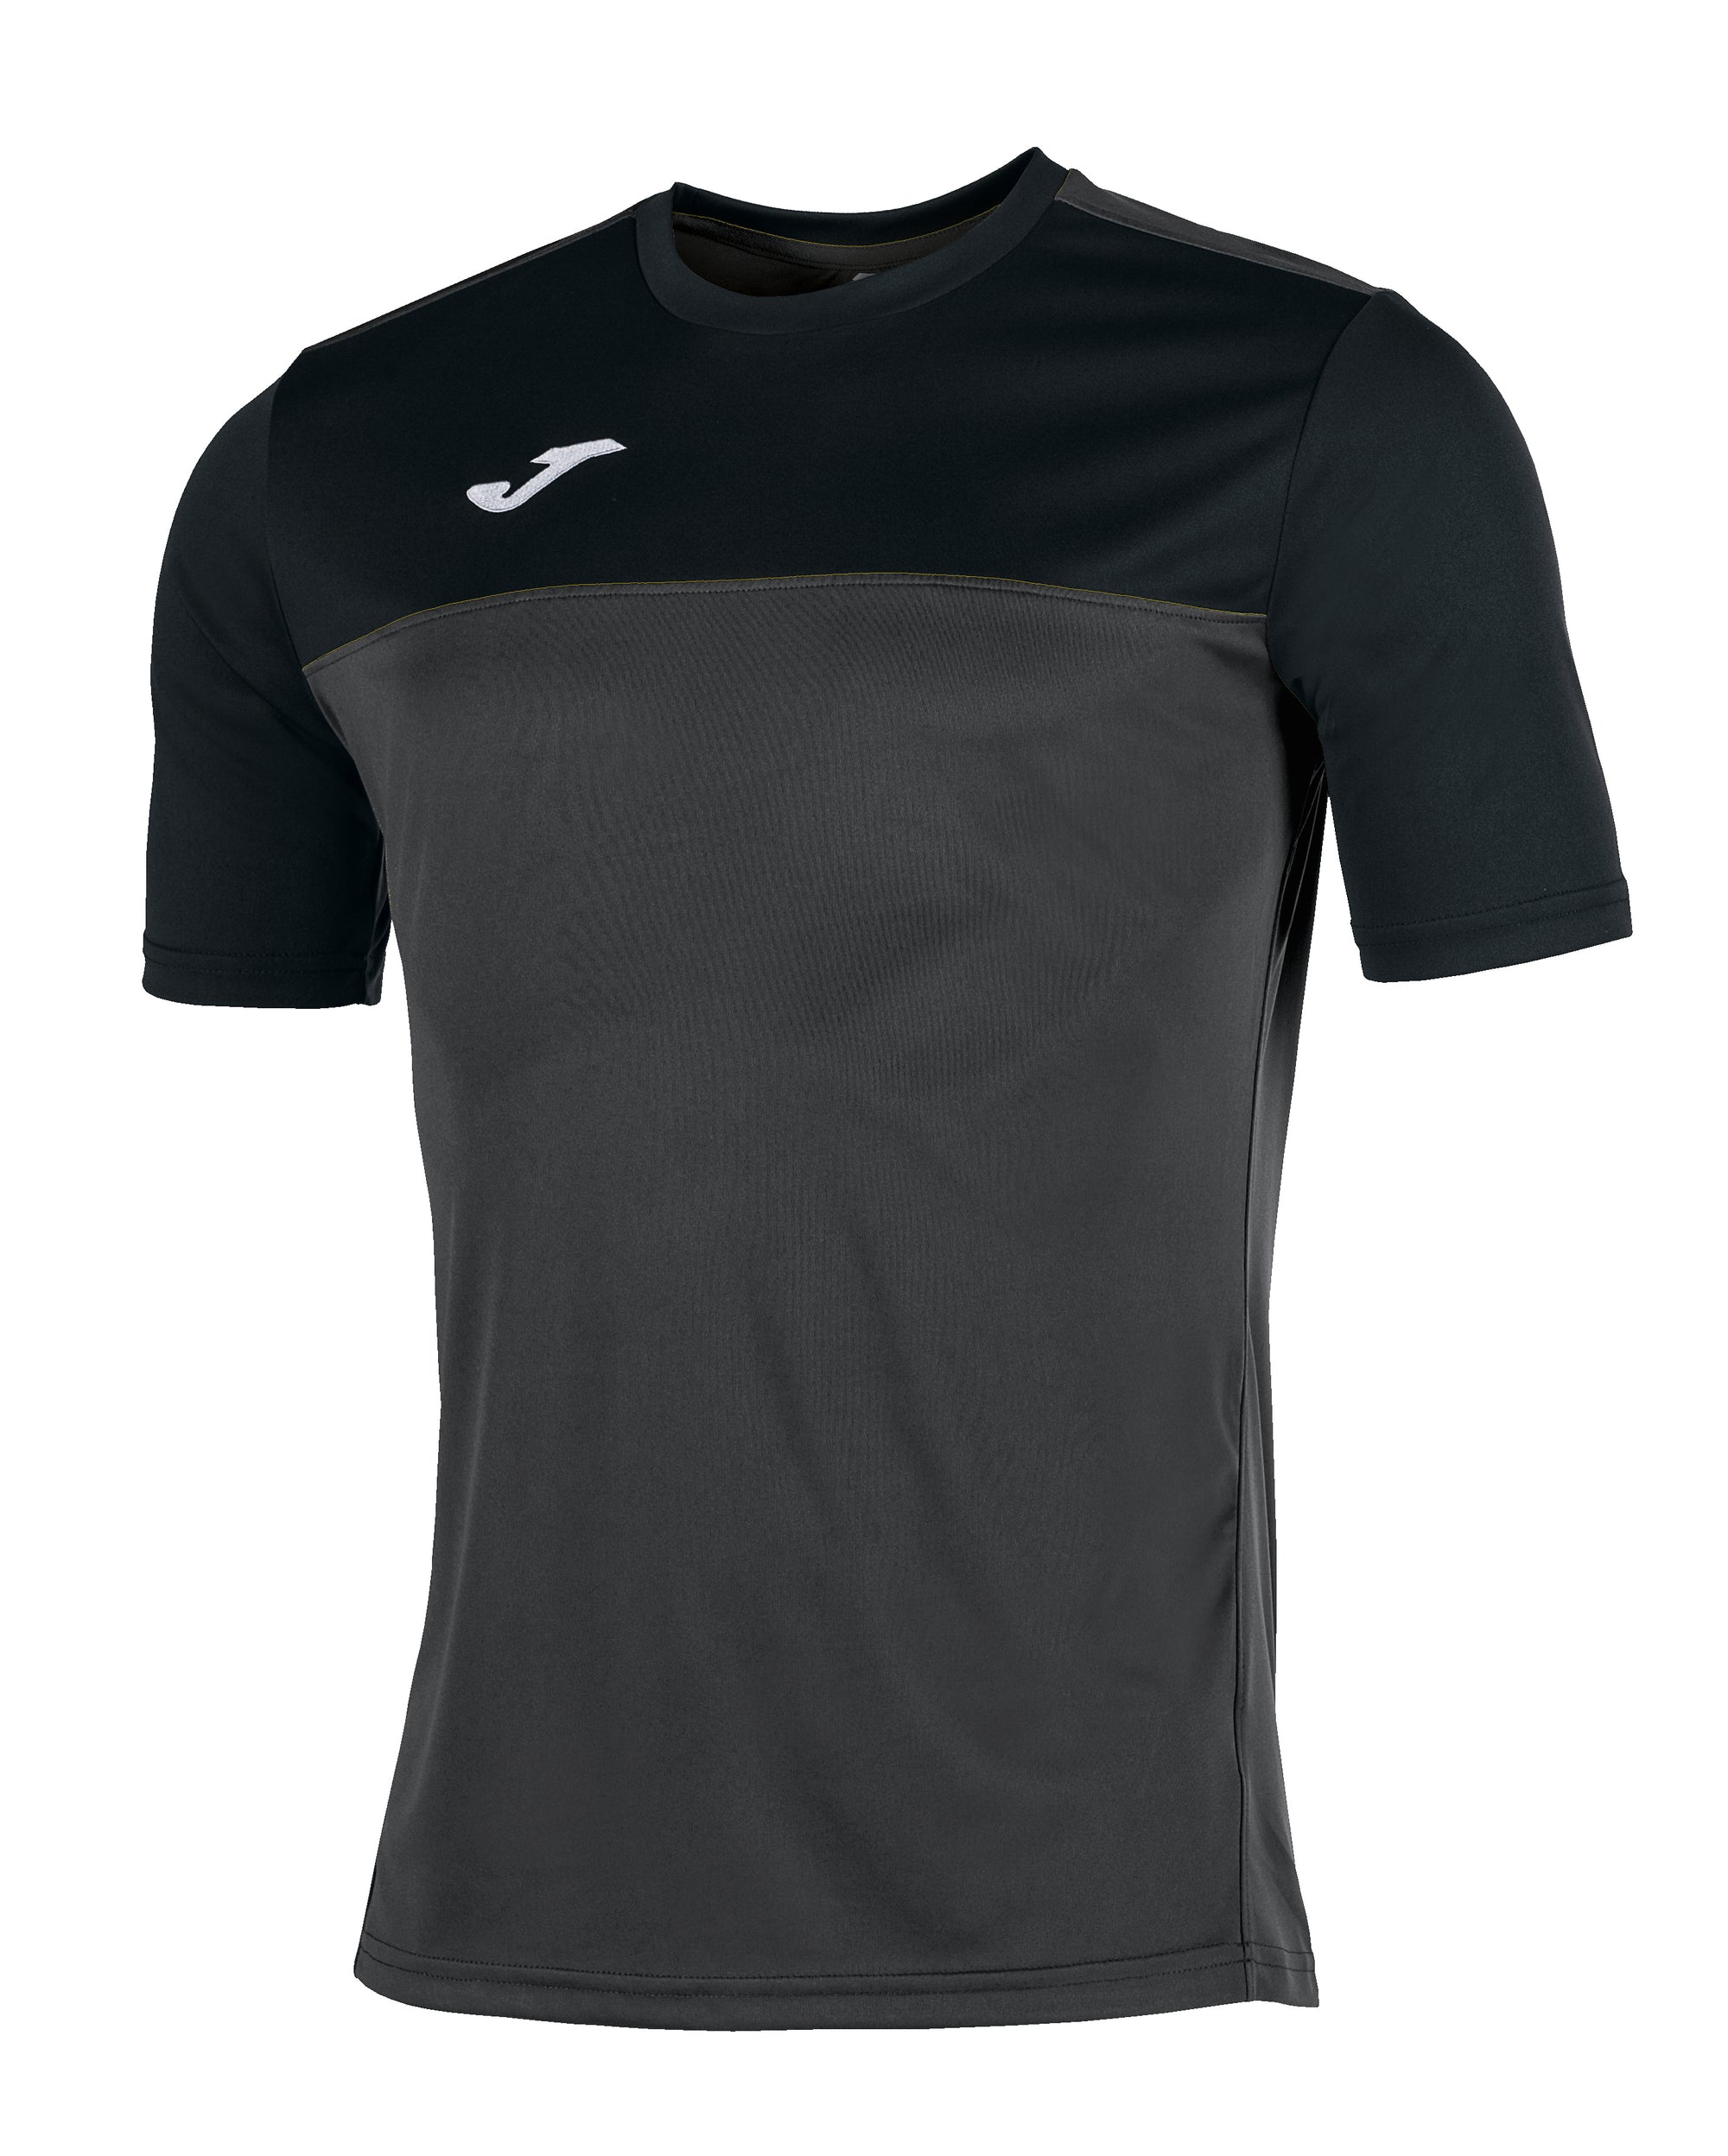 Joma Winner Short Sleeved T-Shirt - Anthracite/Black